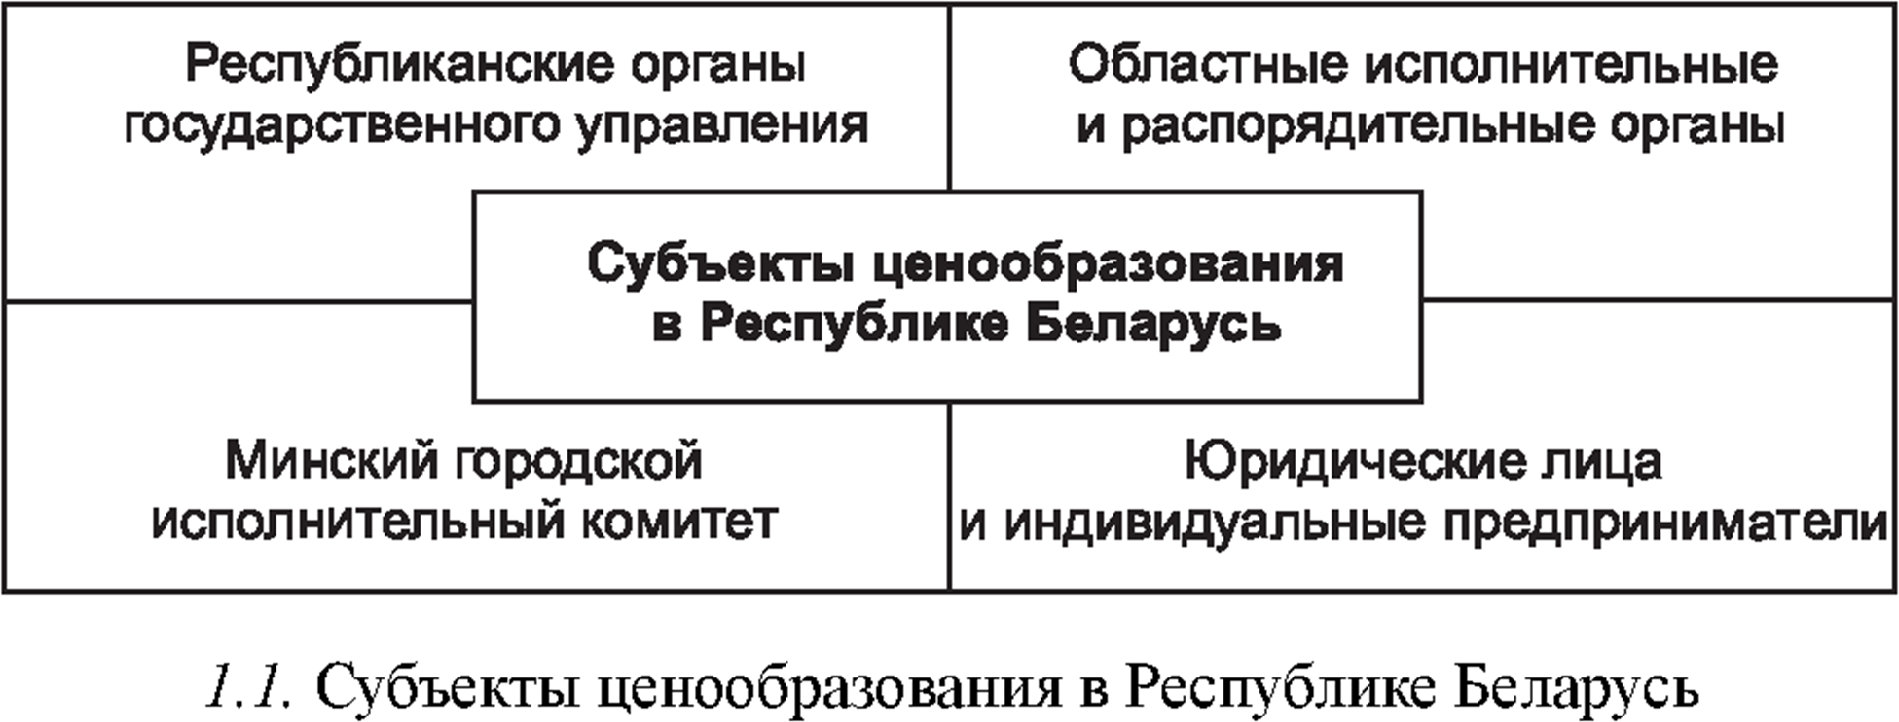 Субъекты ценообразования в республике Беларусь